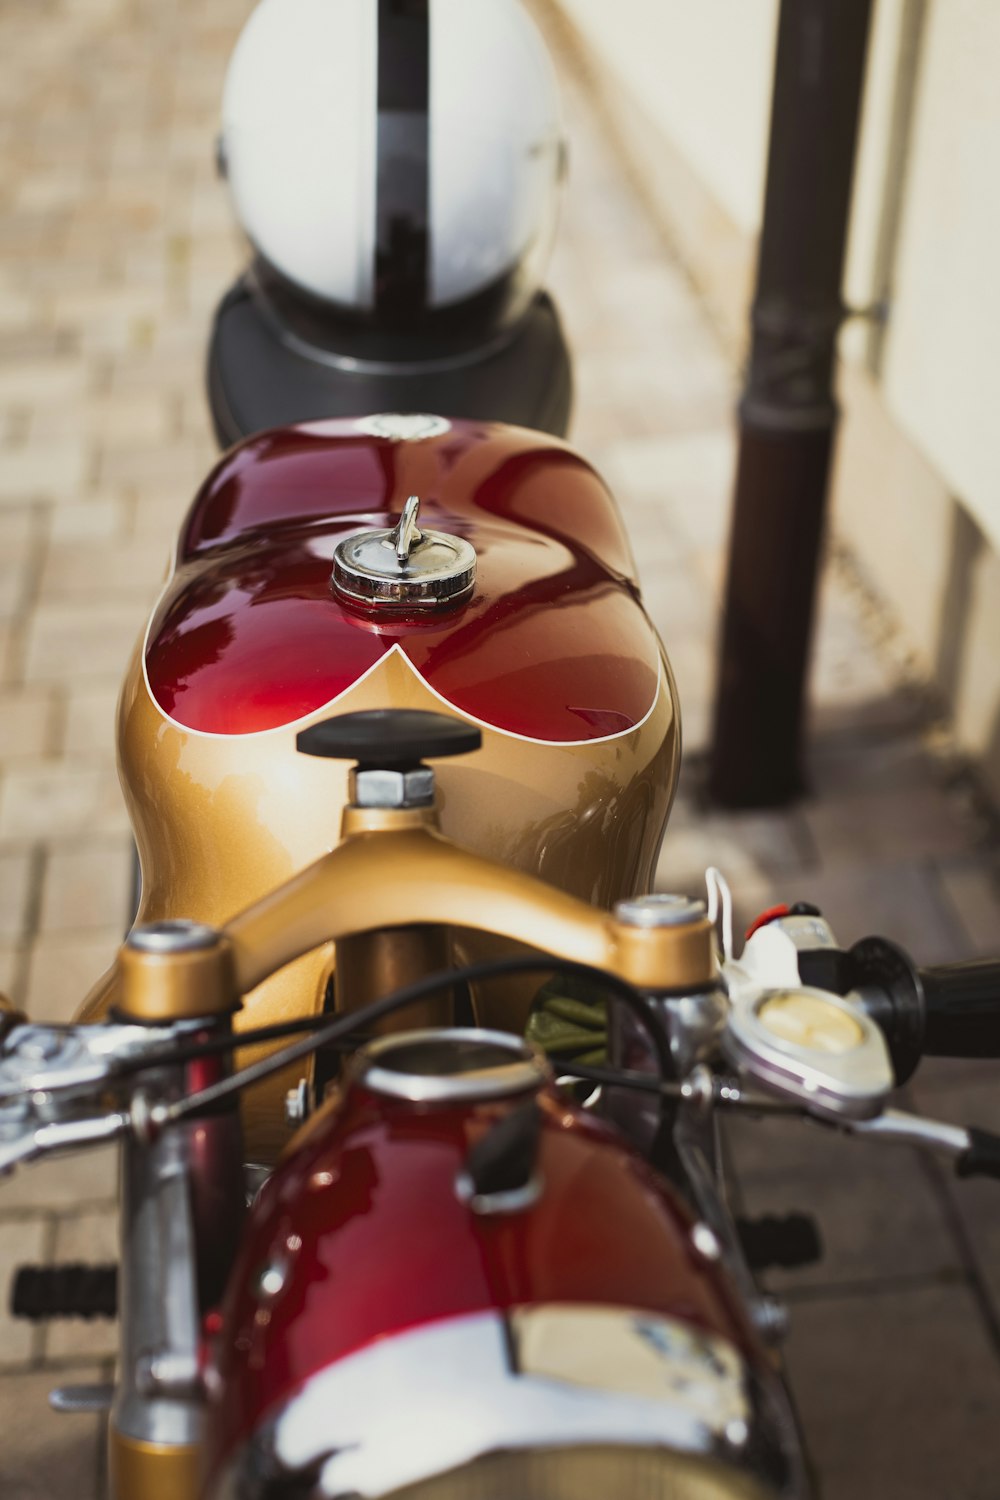 Una motocicleta roja y dorada estacionada en una acera